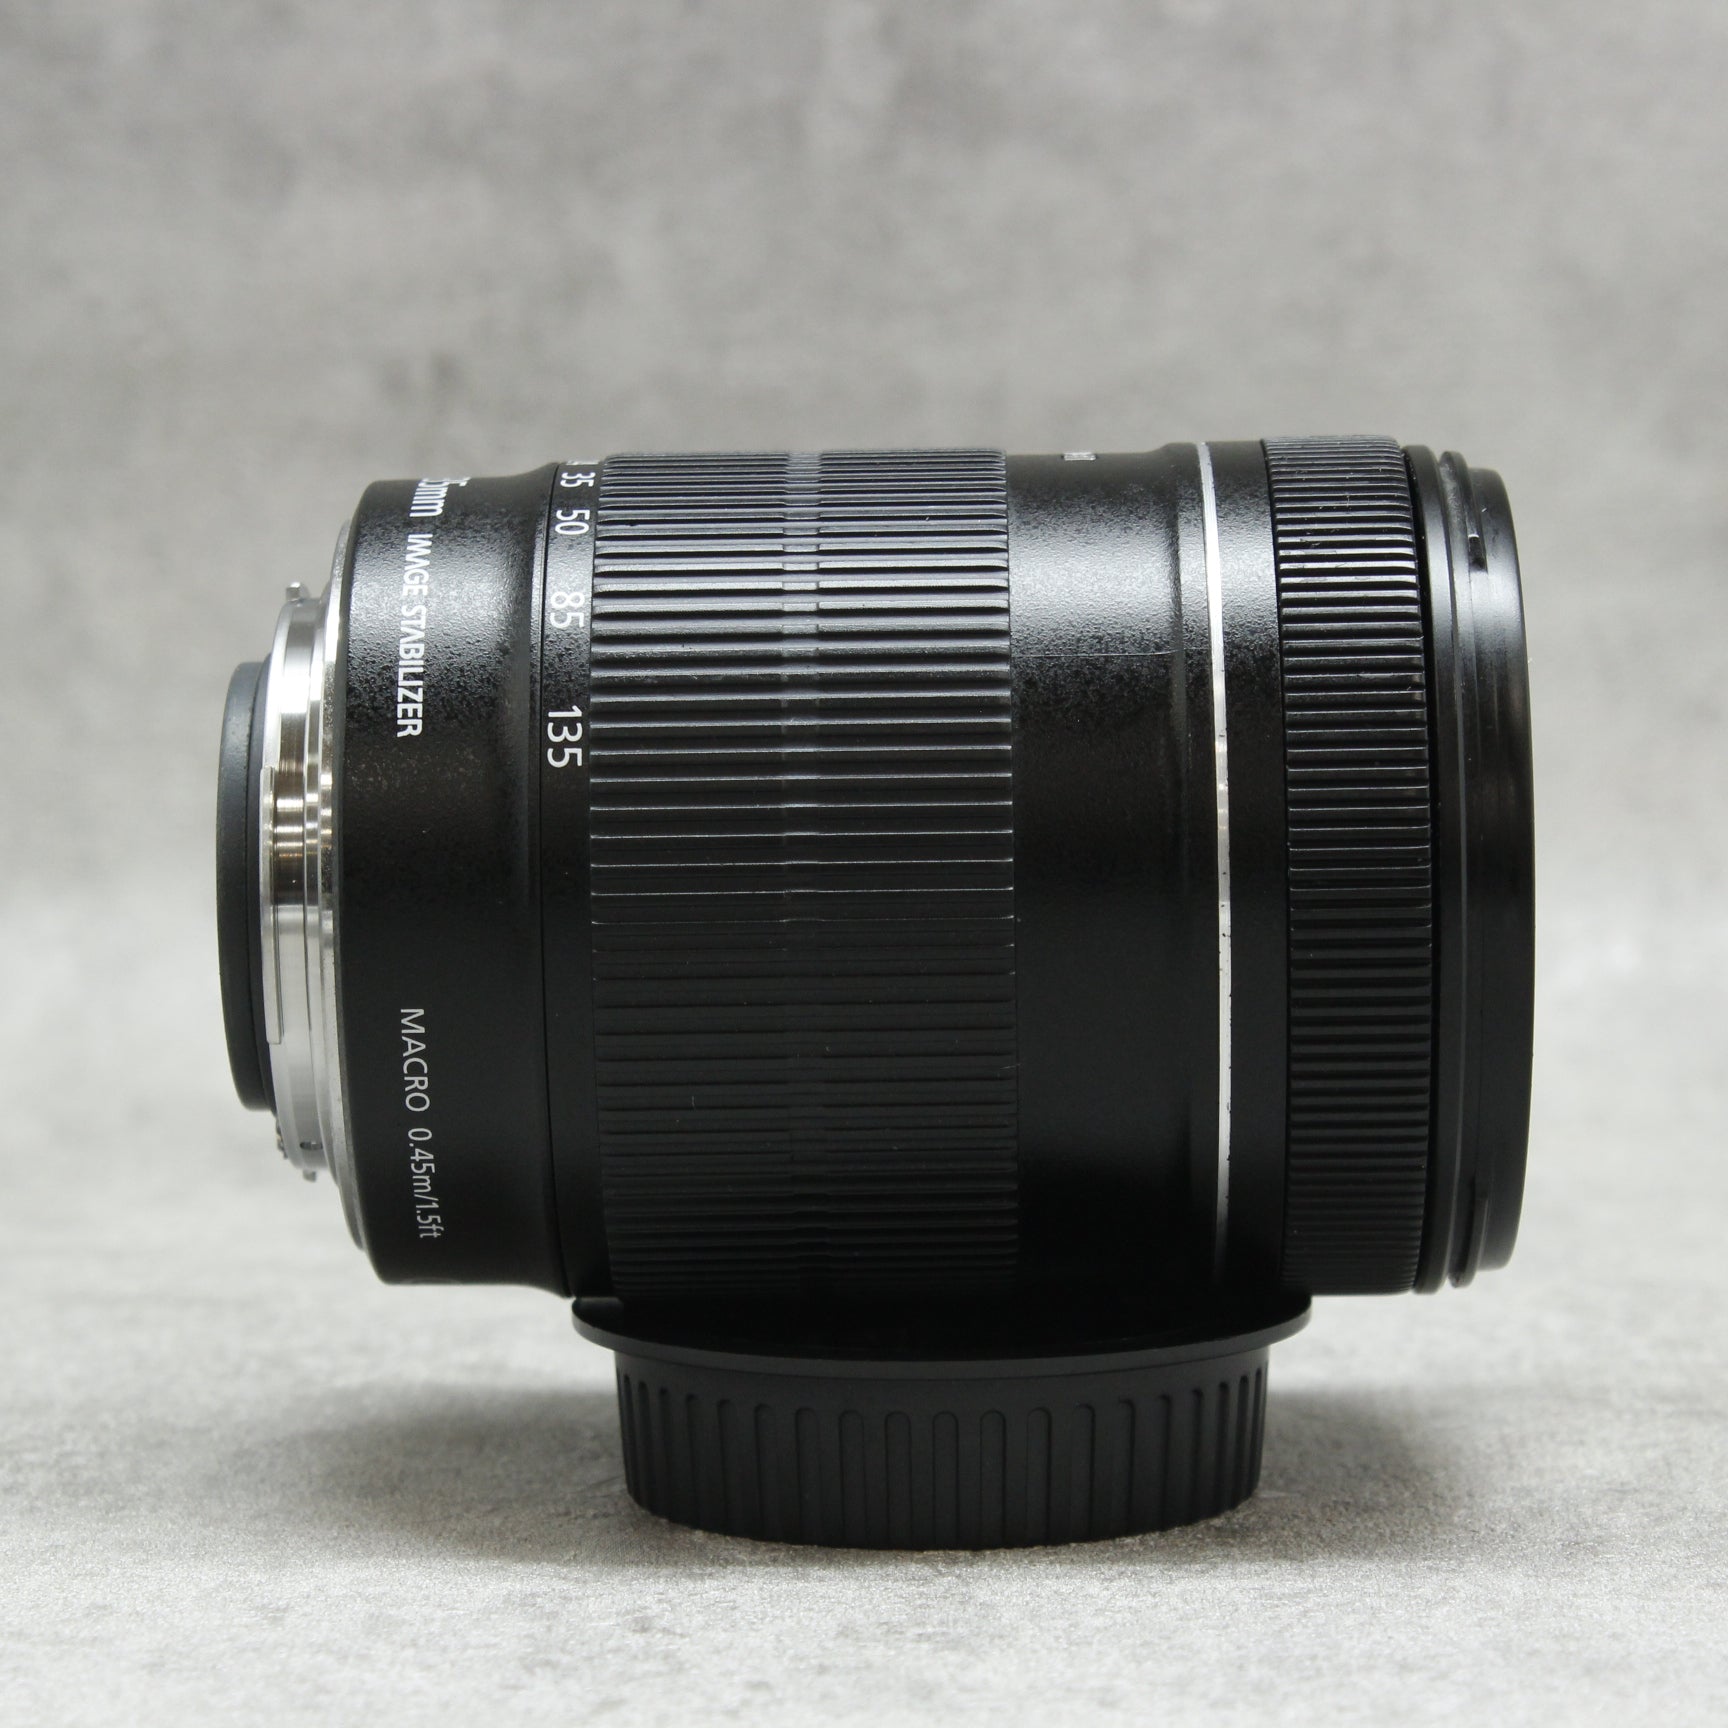 中古品 Canon EOS 60D EF-S18-135 IS レンズキット ☆3月23日(